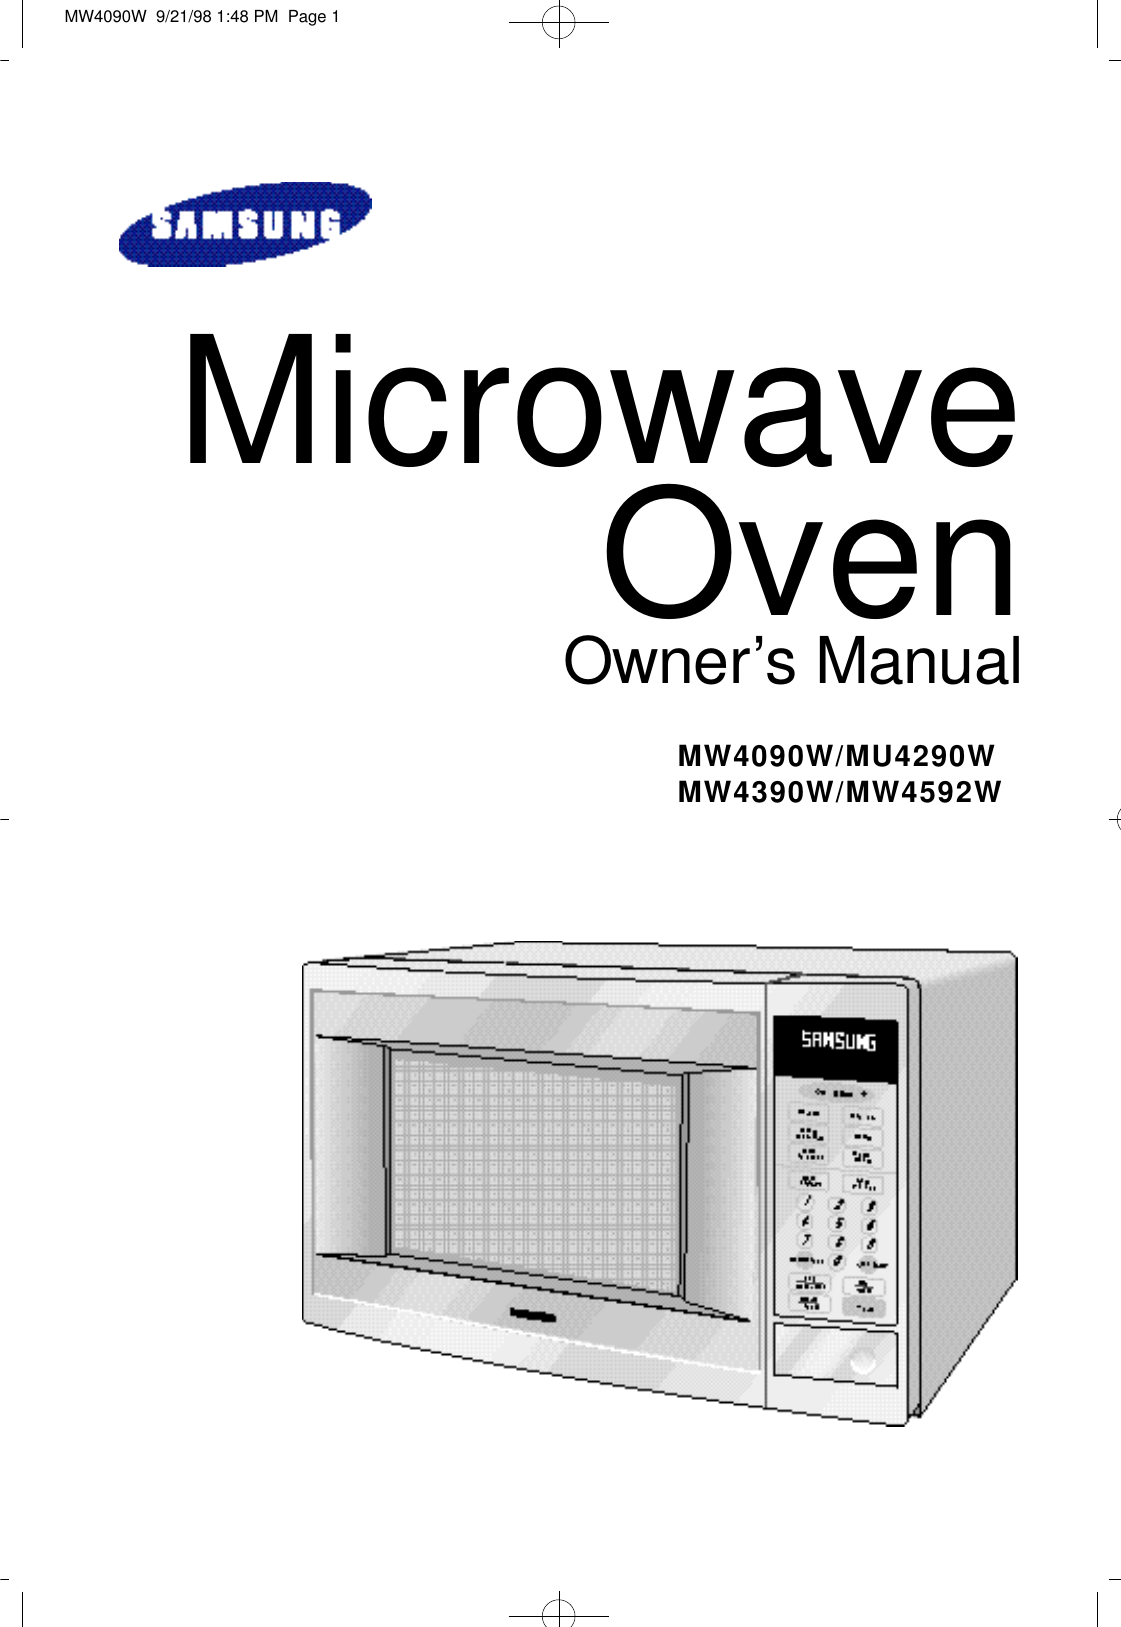 Microwave OvenO w n e r’s ManualM W 4 0 9 0 W / M U 4 2 9 0 WM W 4 3 9 0 W / M W 4 5 9 2 WMW4090W  9/21/98 1:48 PM  Page 1